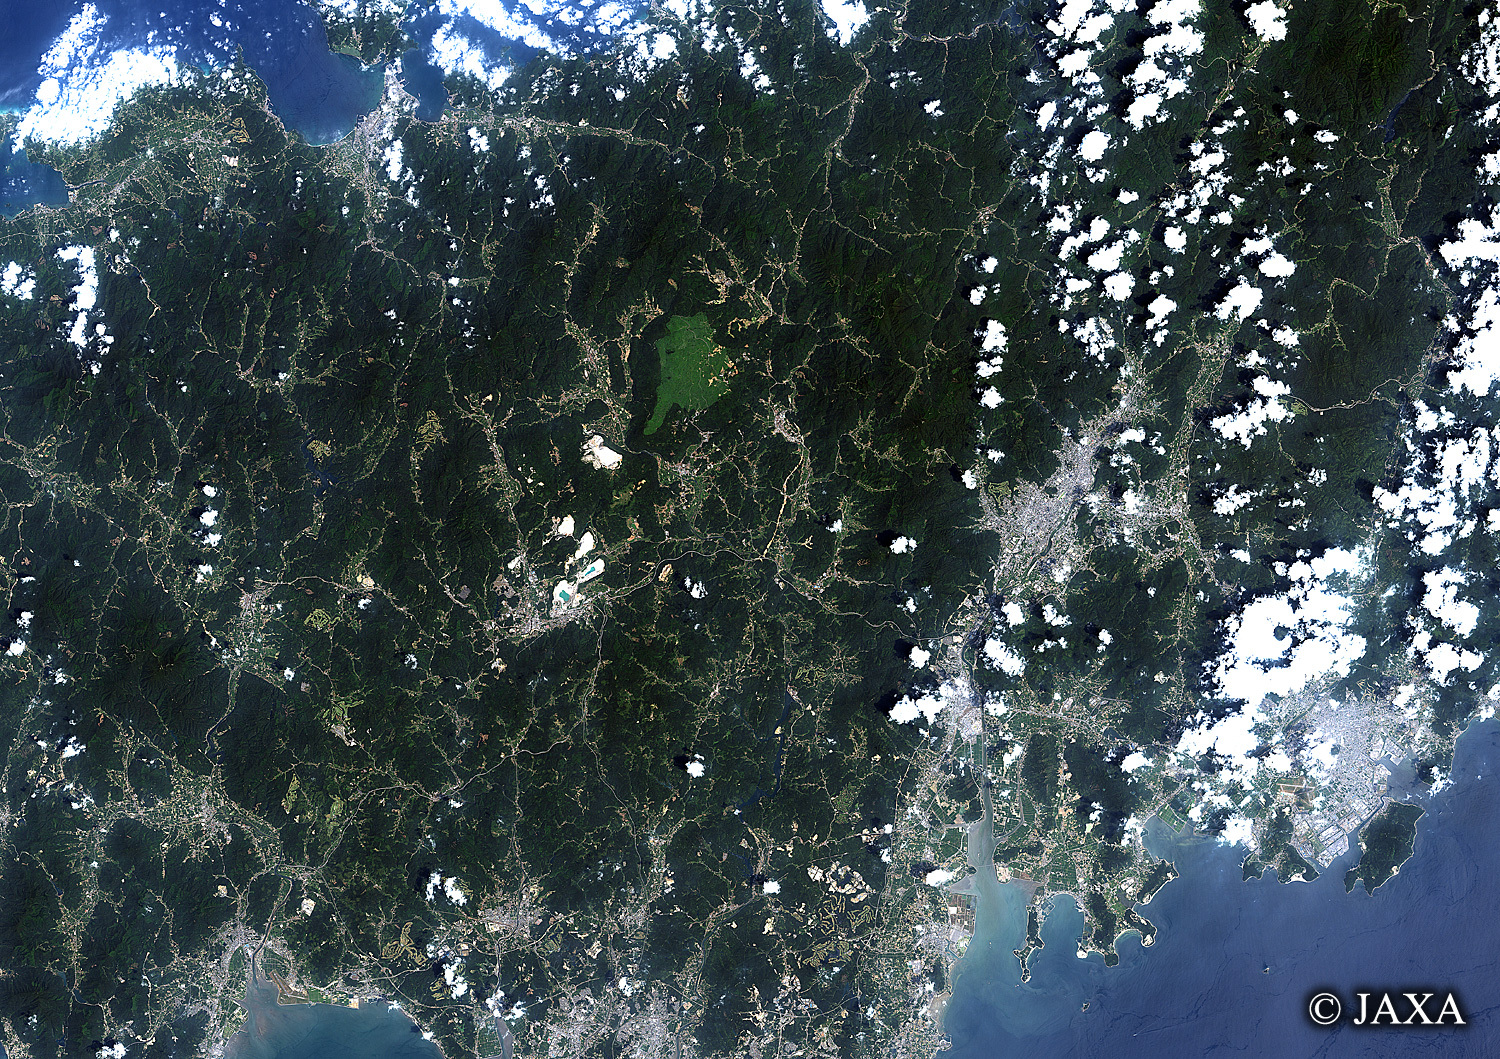 だいちから見た日本の都市 秋吉台:衛星画像